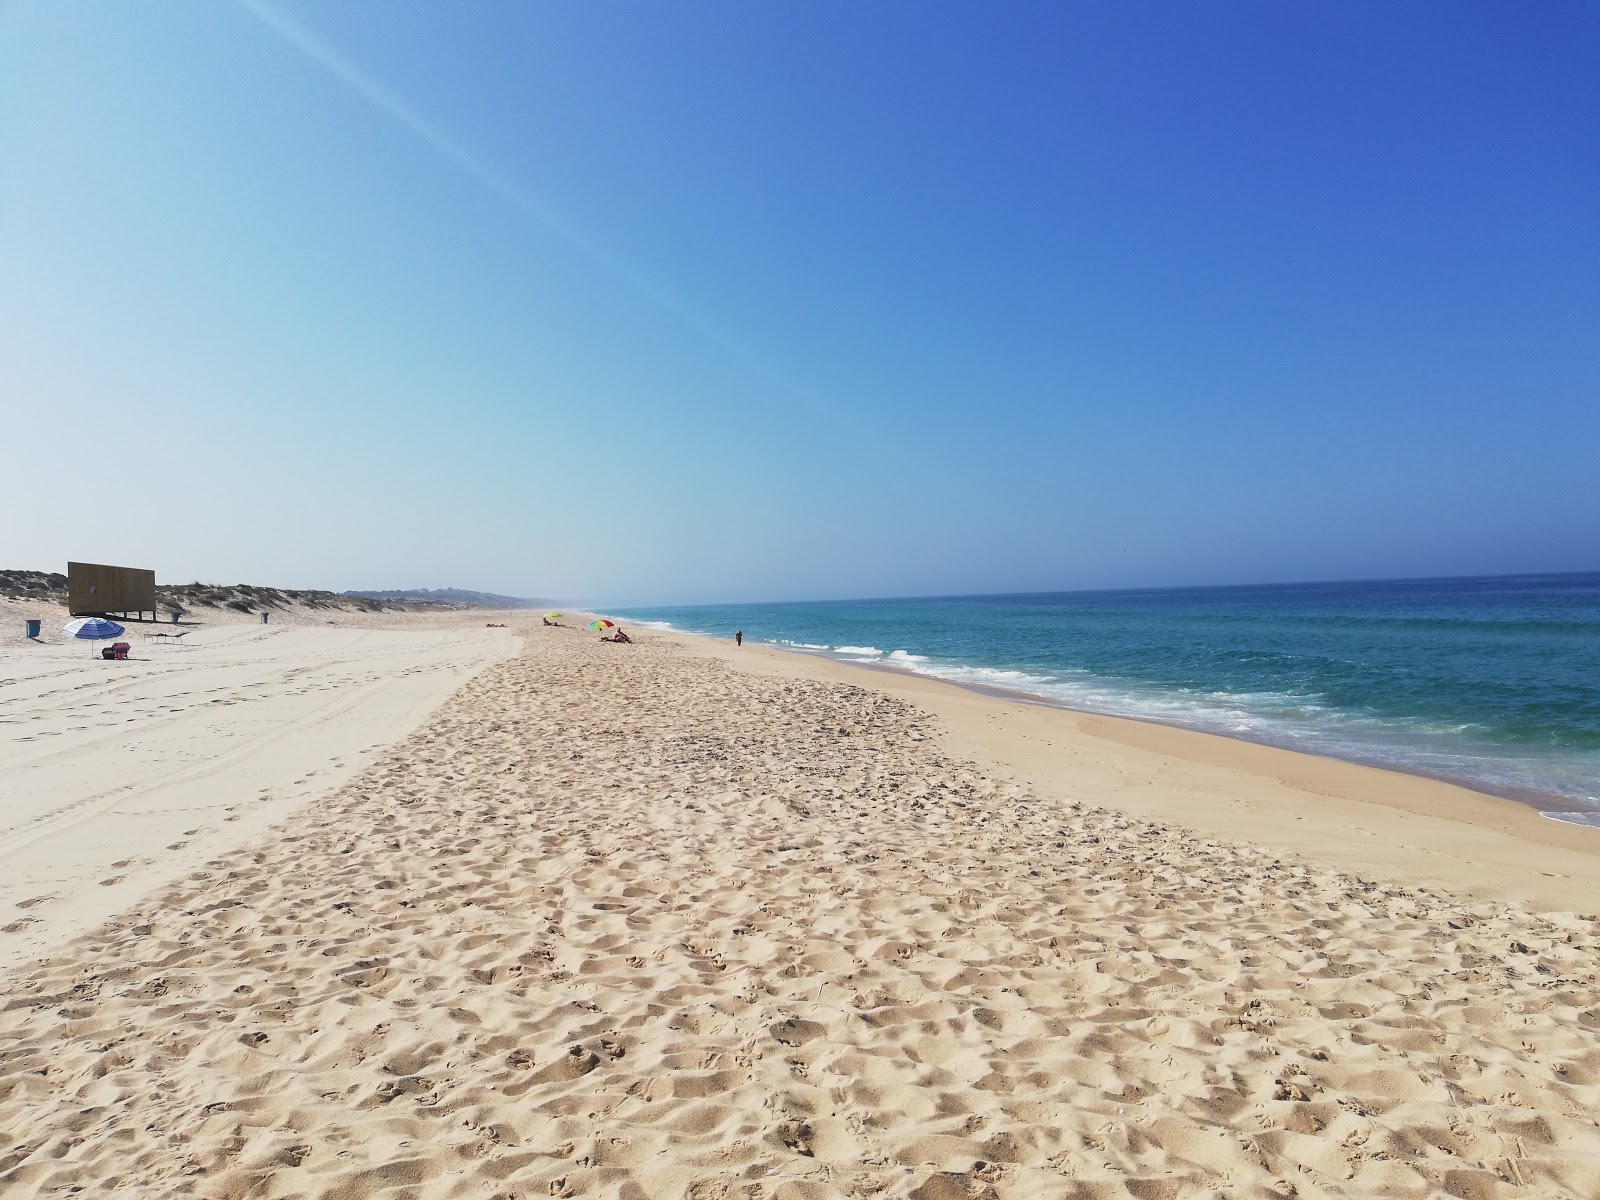 Fotografie cu Praia do Pego cu o suprafață de nisip alb